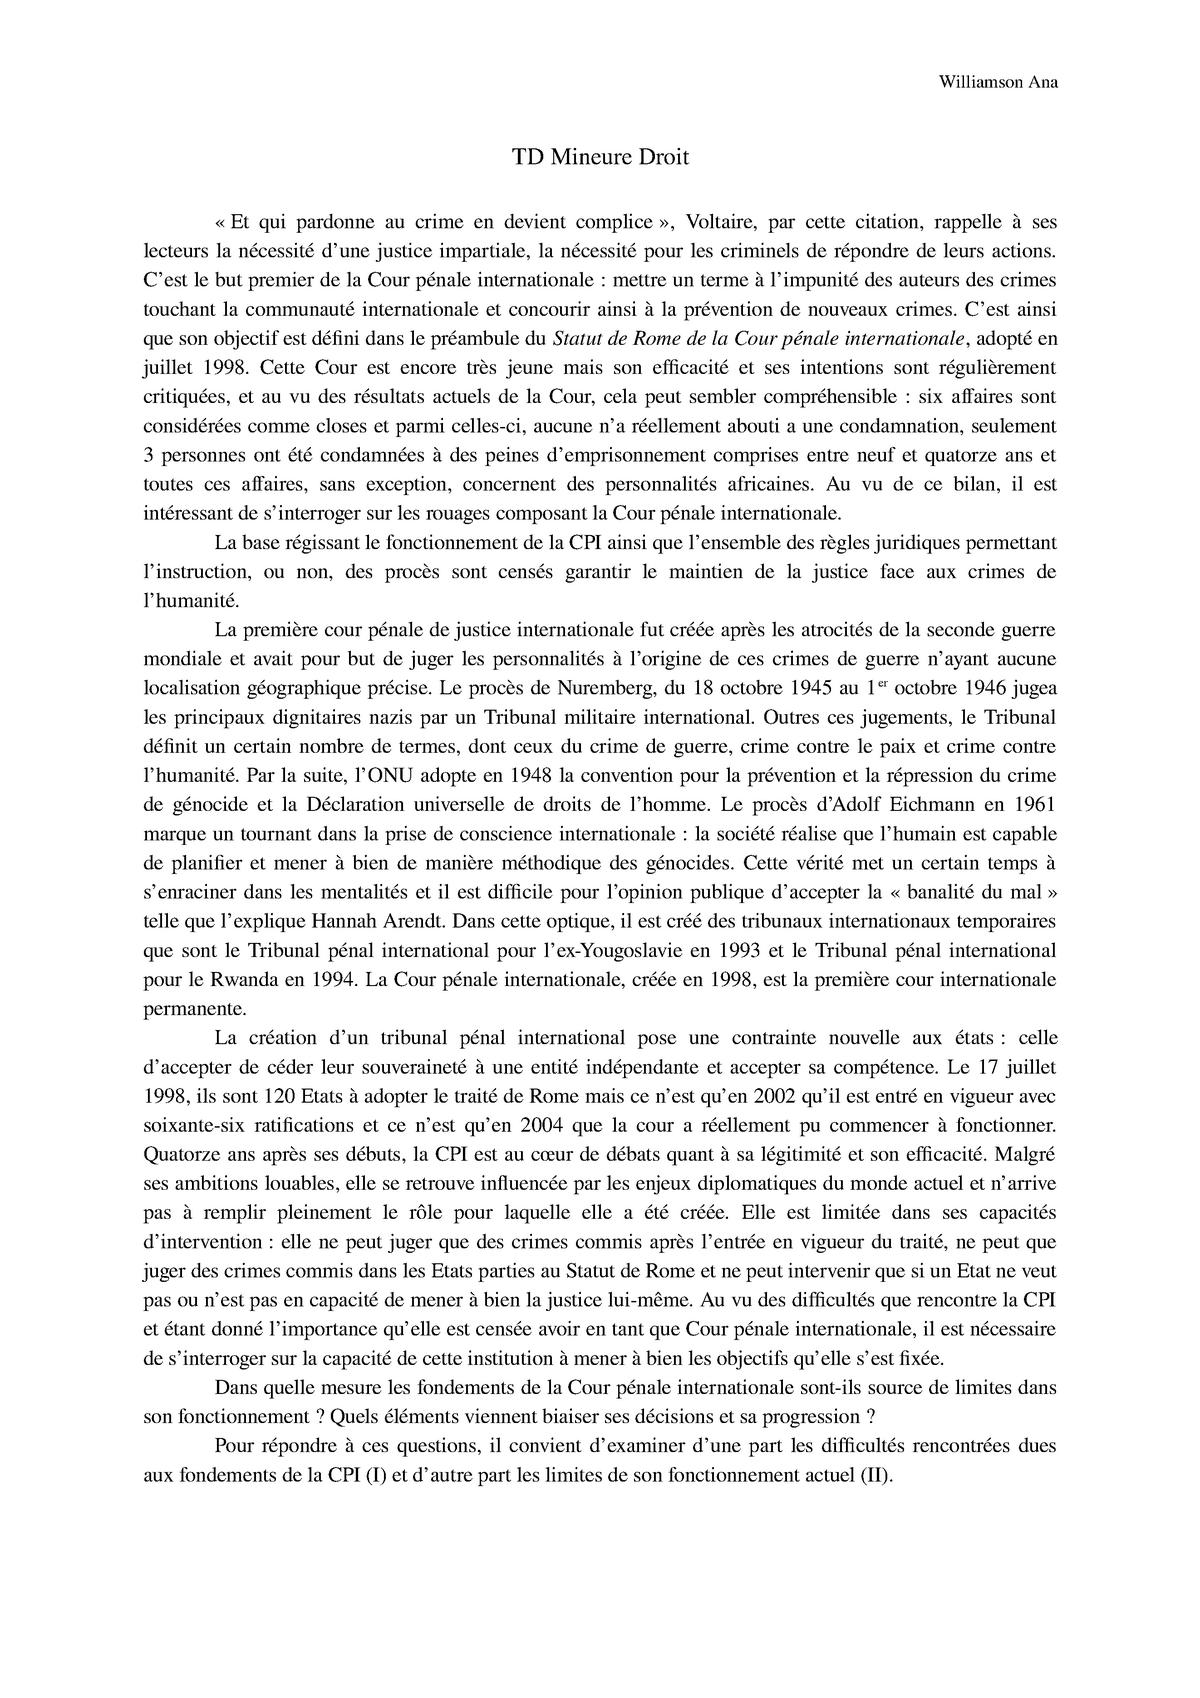 Td Cpi Dissertation Juridique Sur La Cour Penale Internationale 15 Studocu